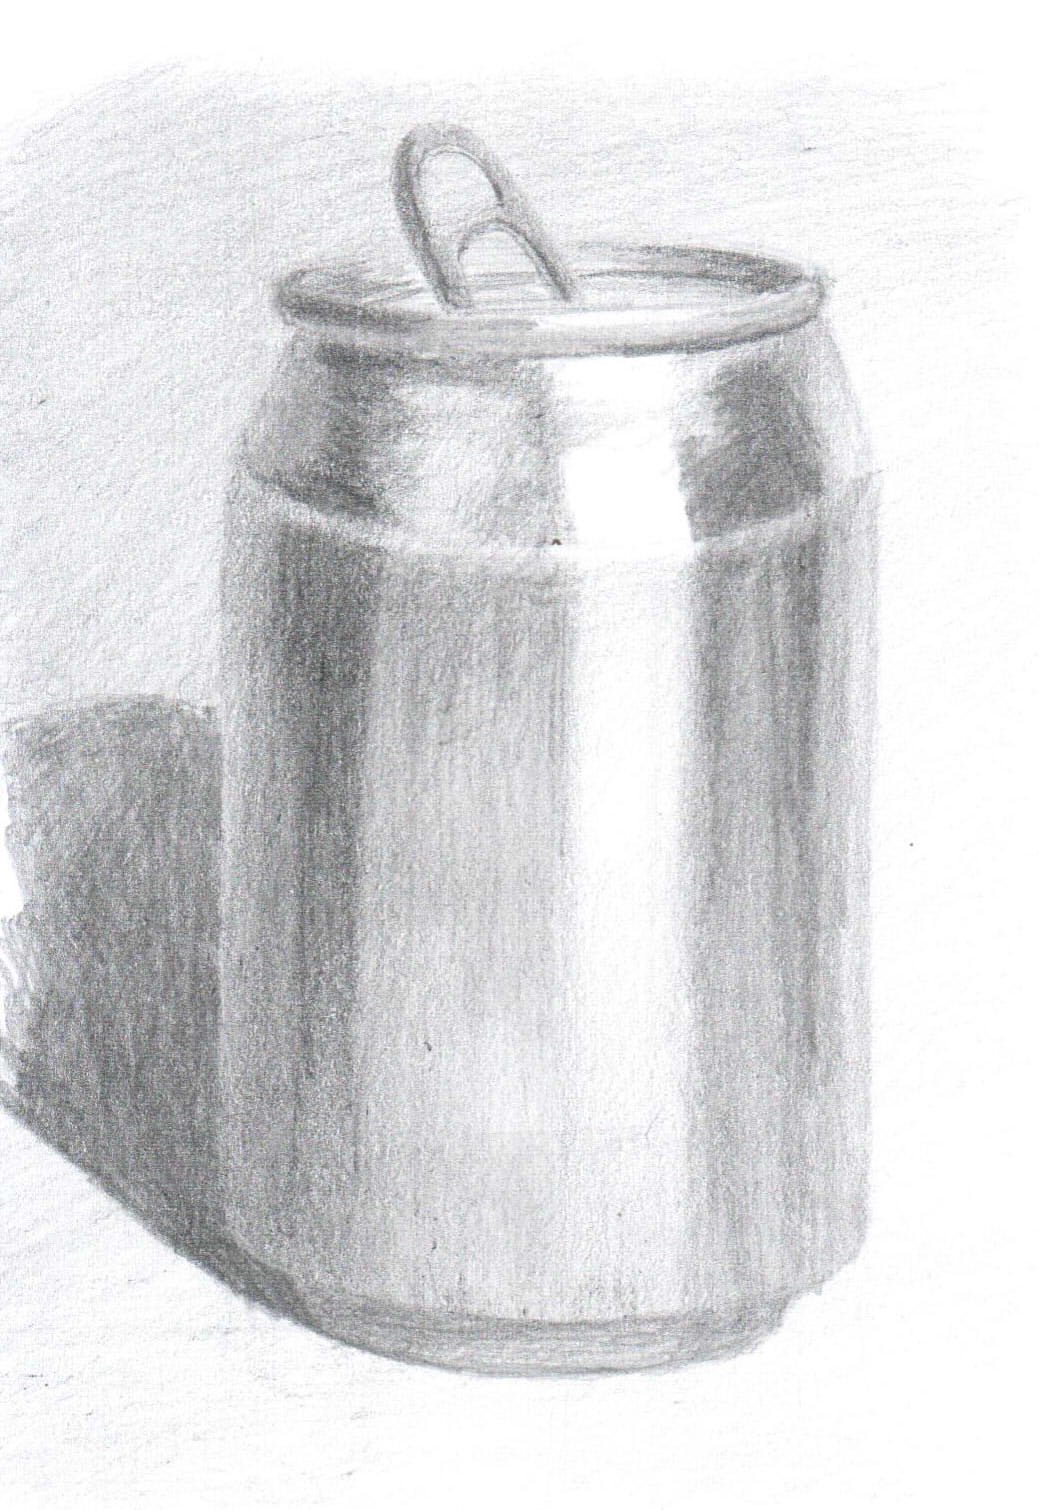 Рисунок двух литровой банки карандашом